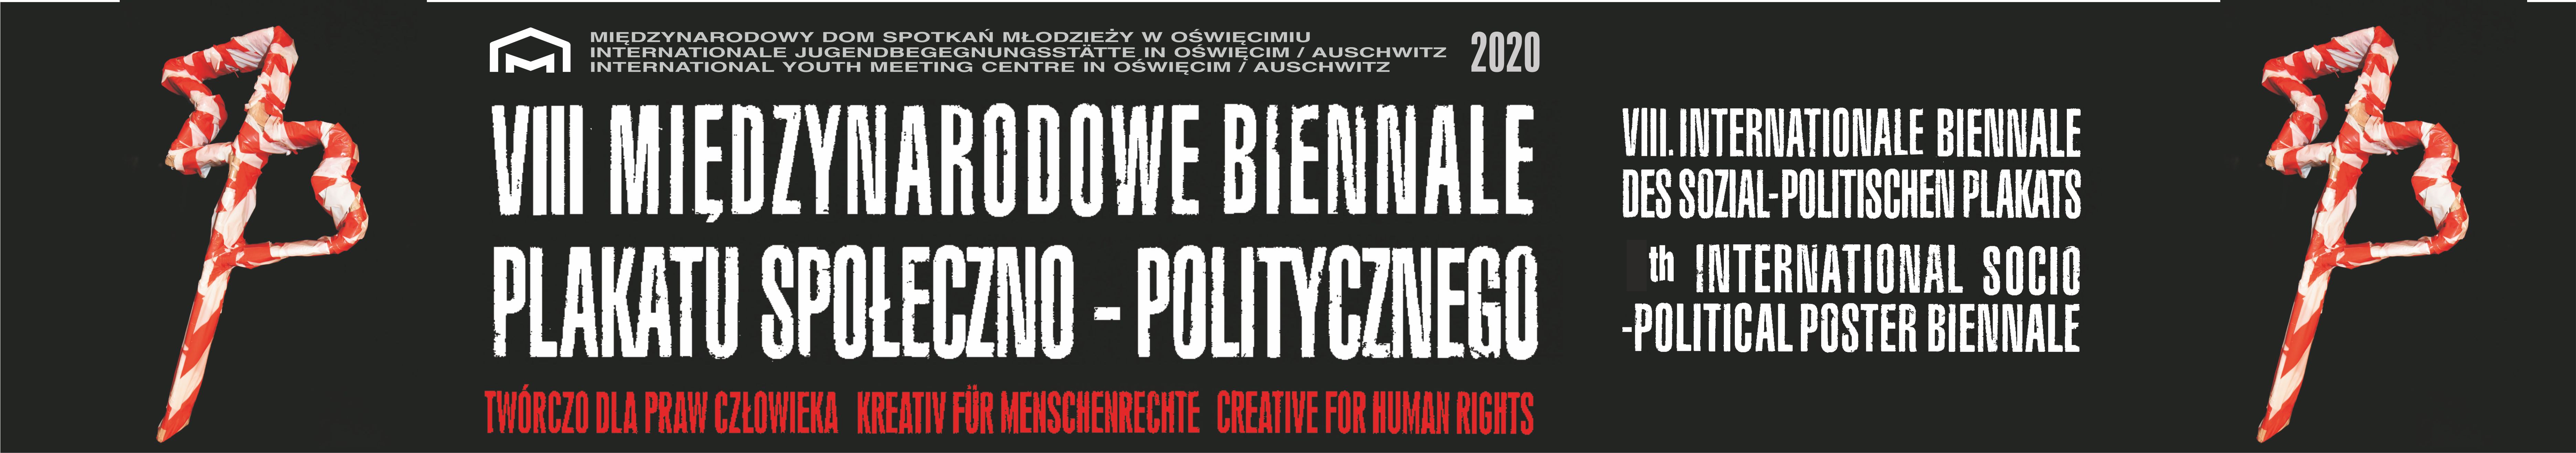 VIII Międzynarodowe Biennale Plakatu Społeczno-Politycznego